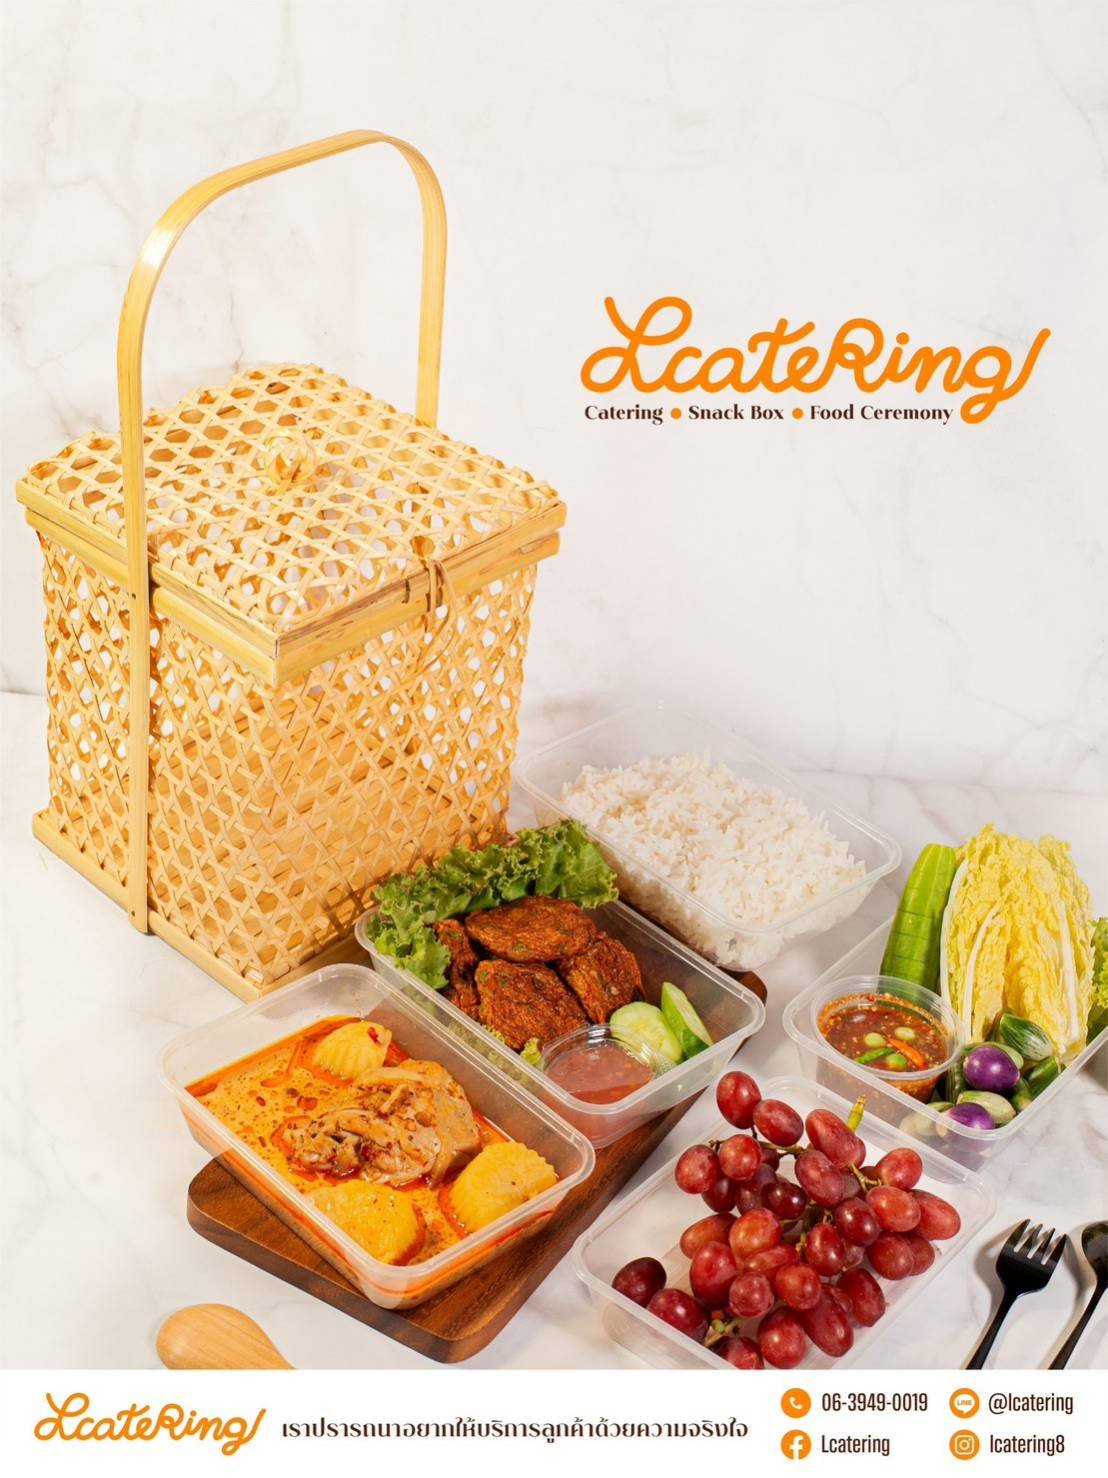 บริการใหม่อนุรักษ์ไทย “Lcatering ชะลอมบุญ” อาหารถวายพระสงฆ์ สะดวก หรูหรา รับบุญรวดเร็ว